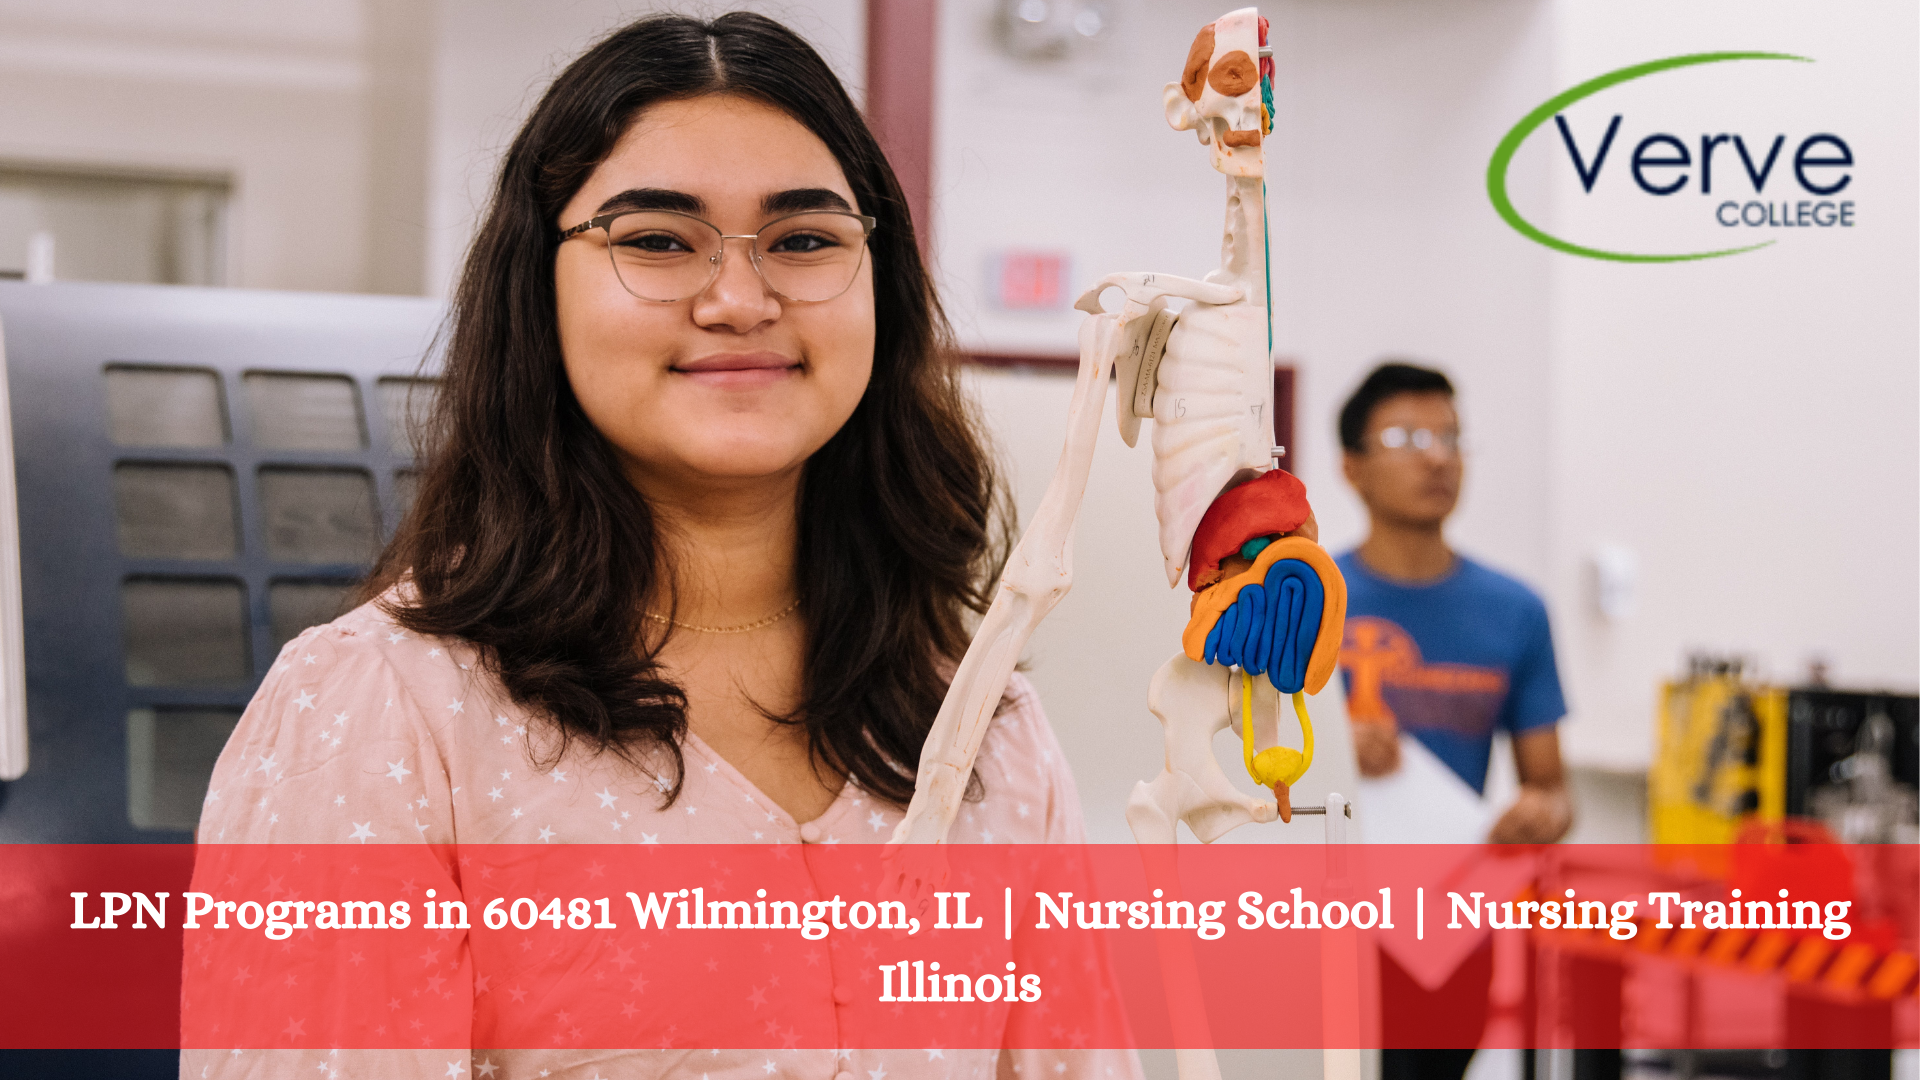 LPN Programs in 60481 Wilmington, IL | Nursing School | Nursing Training Illinois